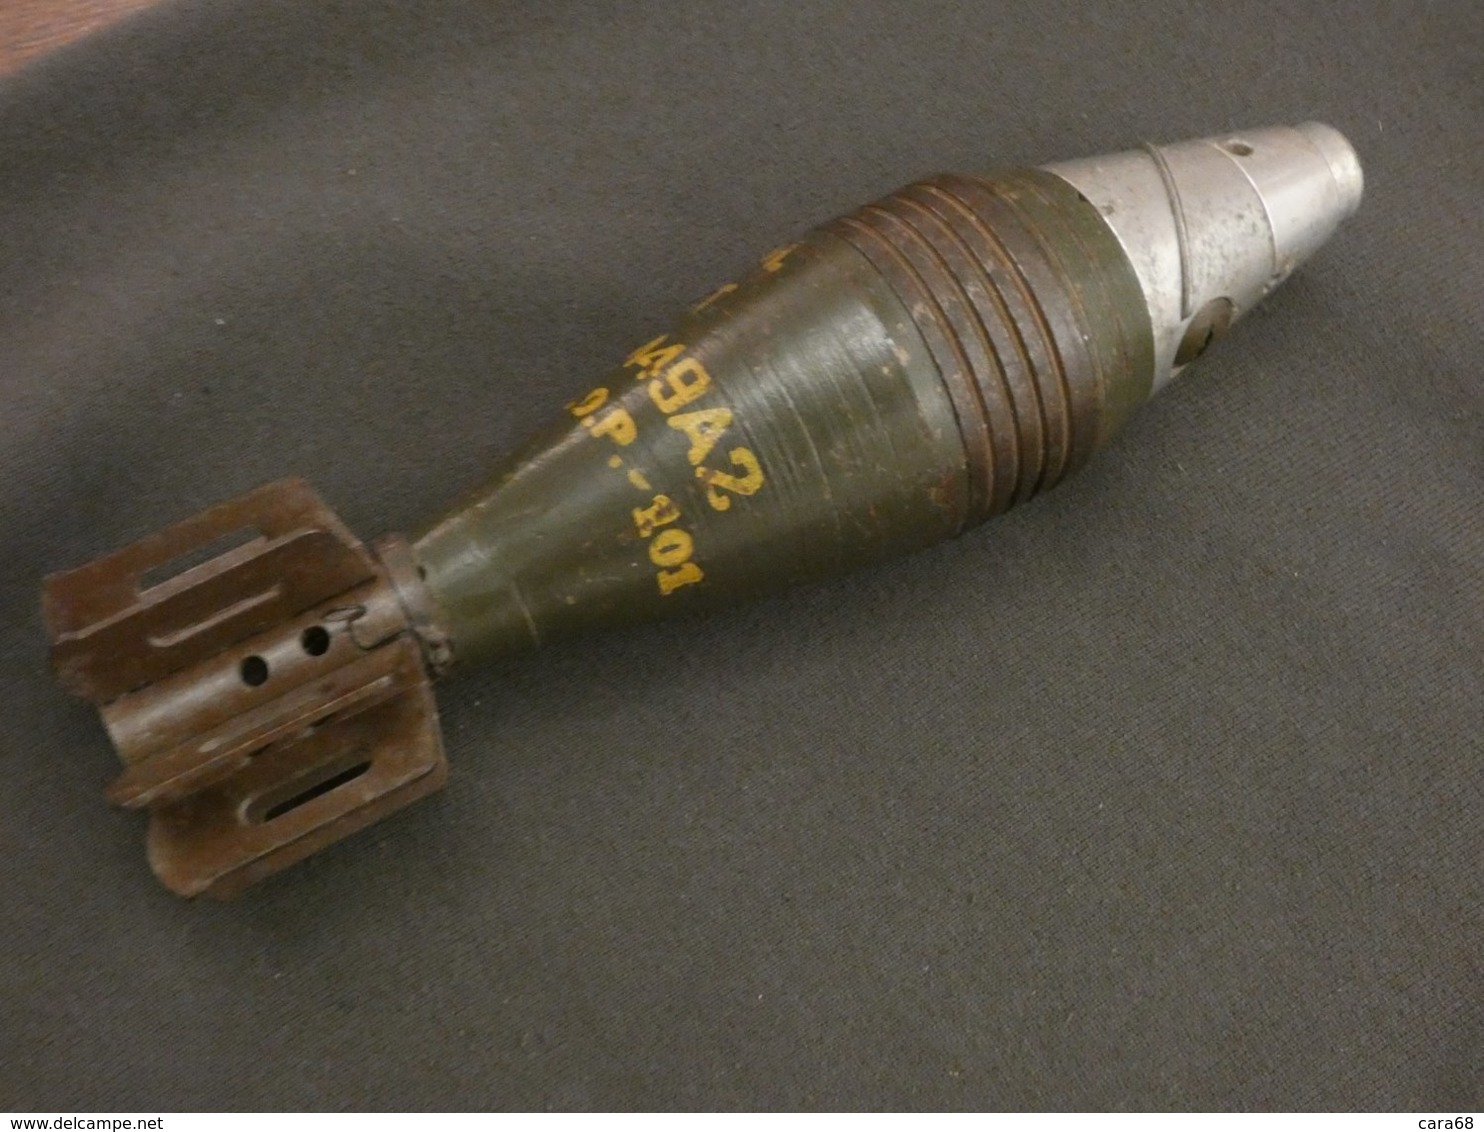 Munition de mortier 60mm M49A2 US WW2